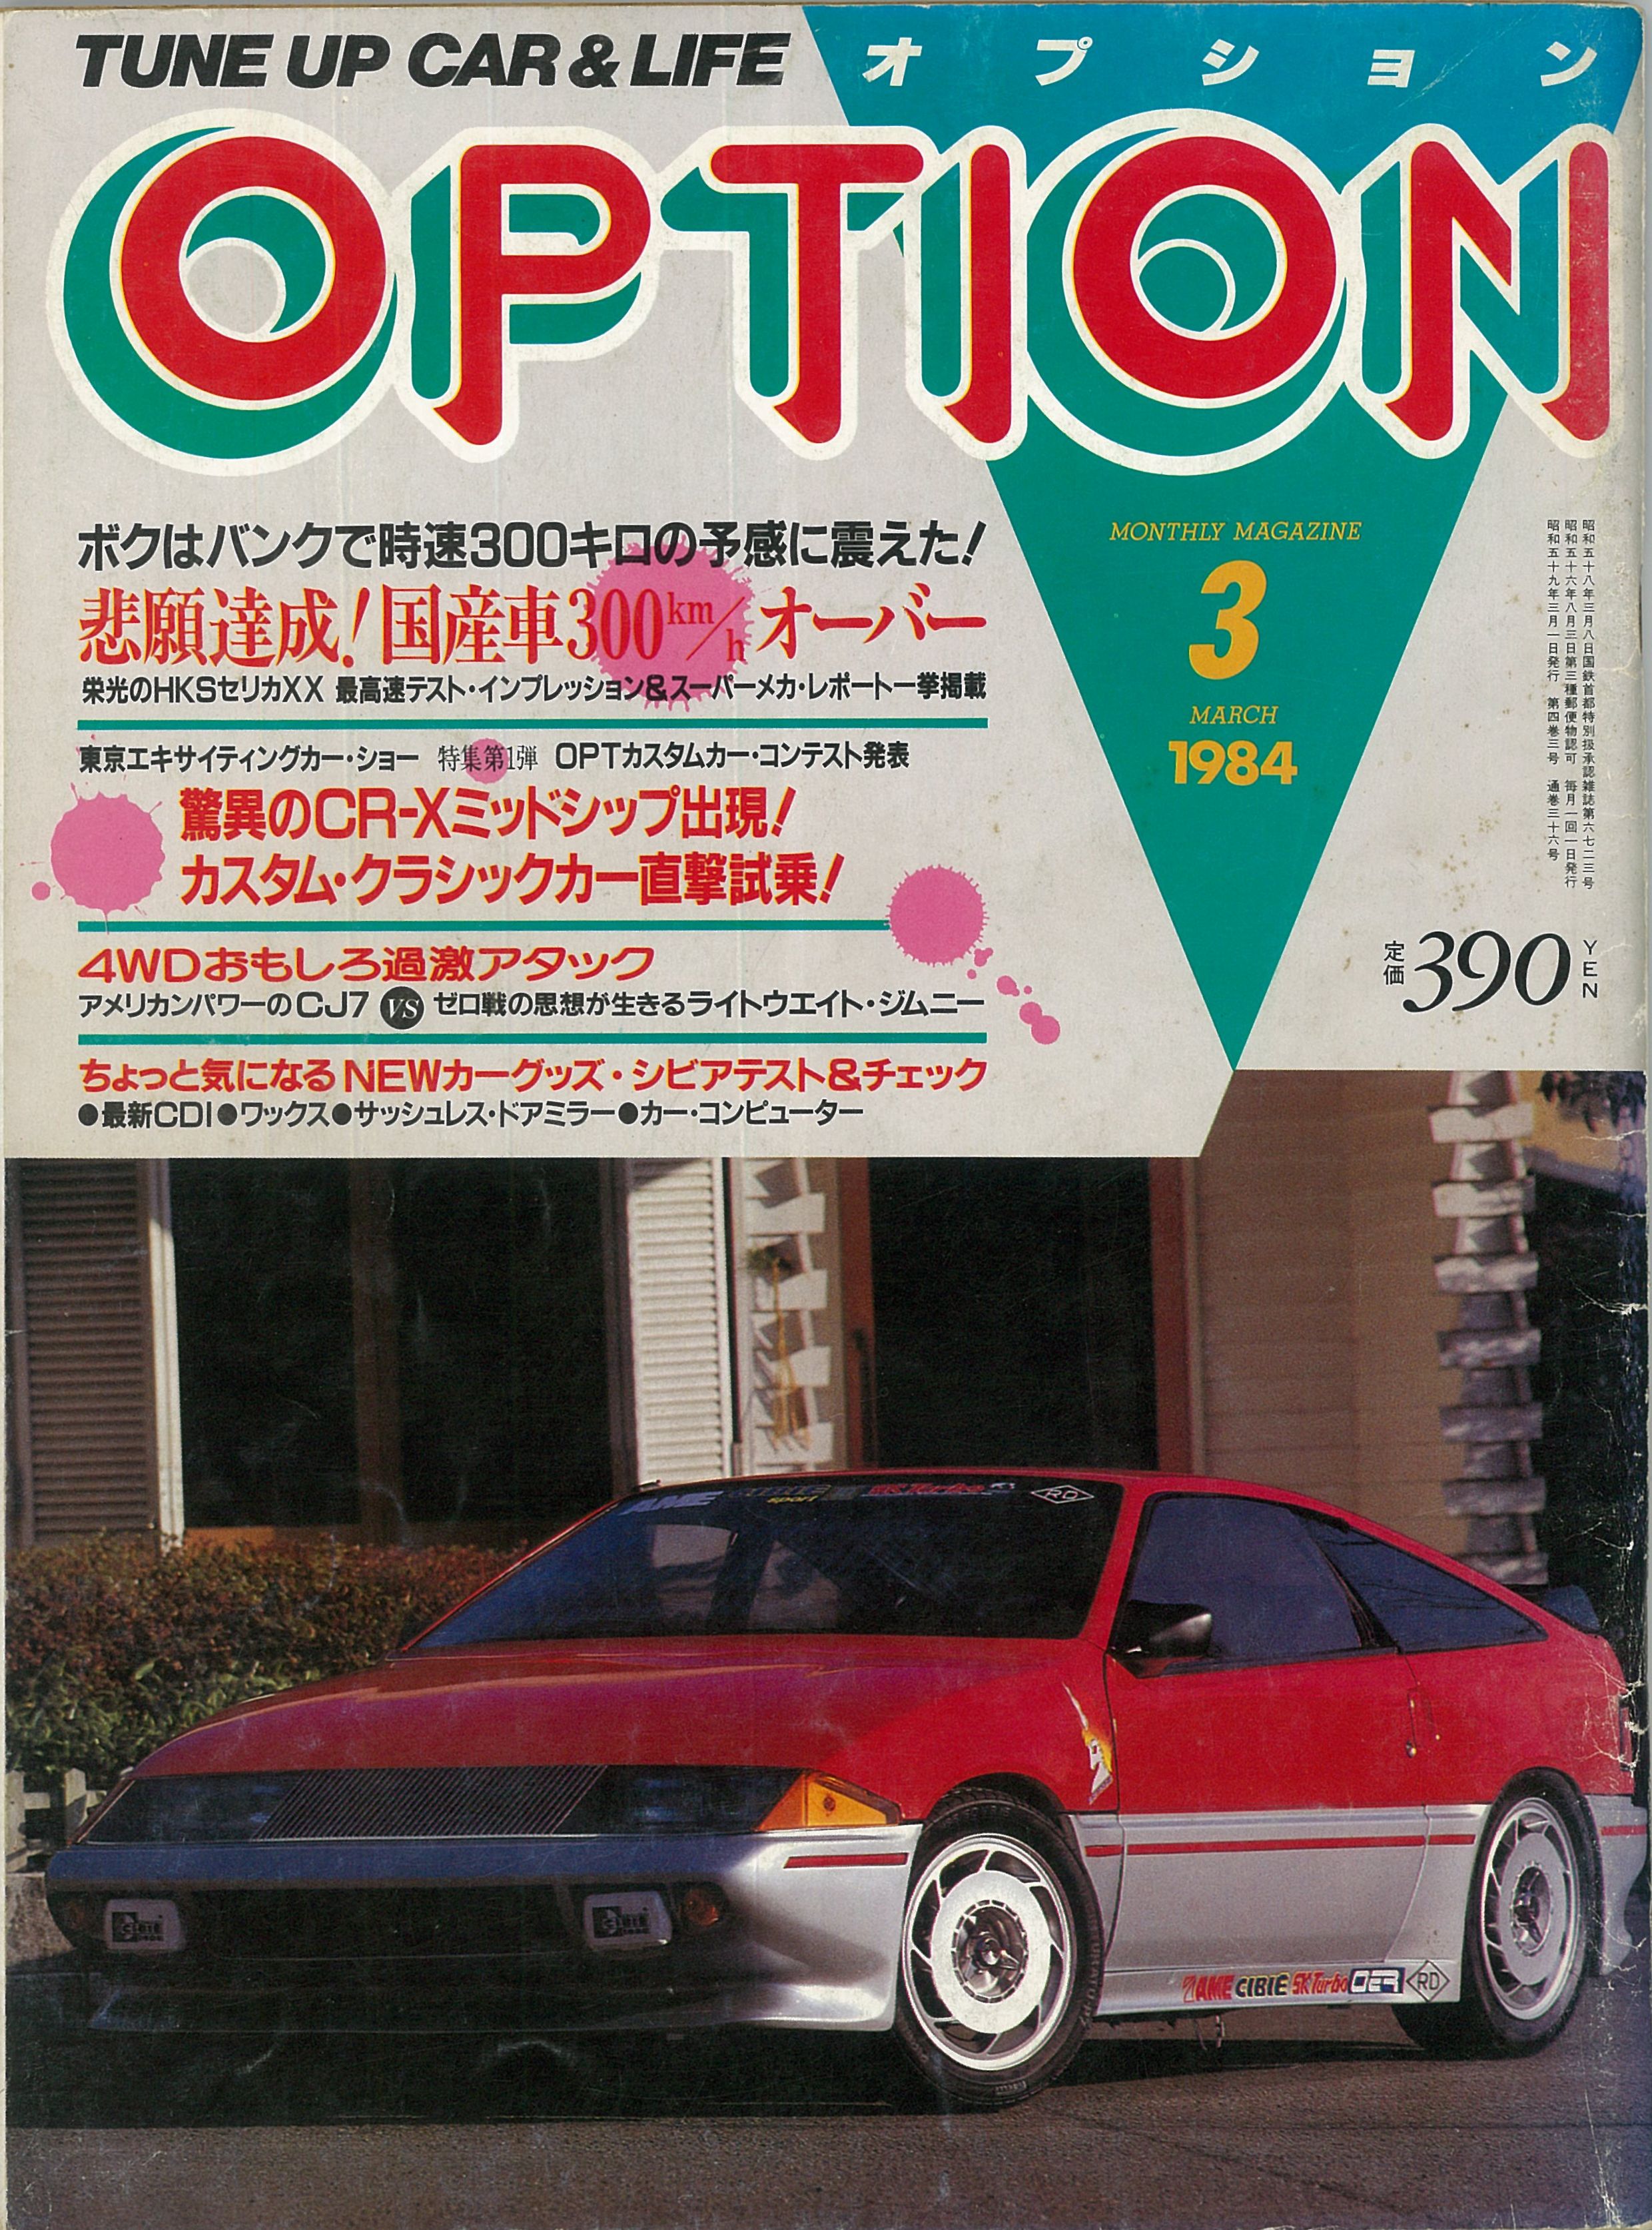 1984 3月号表1 画像 ついに出た 国産車初の300km Hオーバーはhksセリカxx M300 だった その1 Option 1984年3月号より Clicccar Com